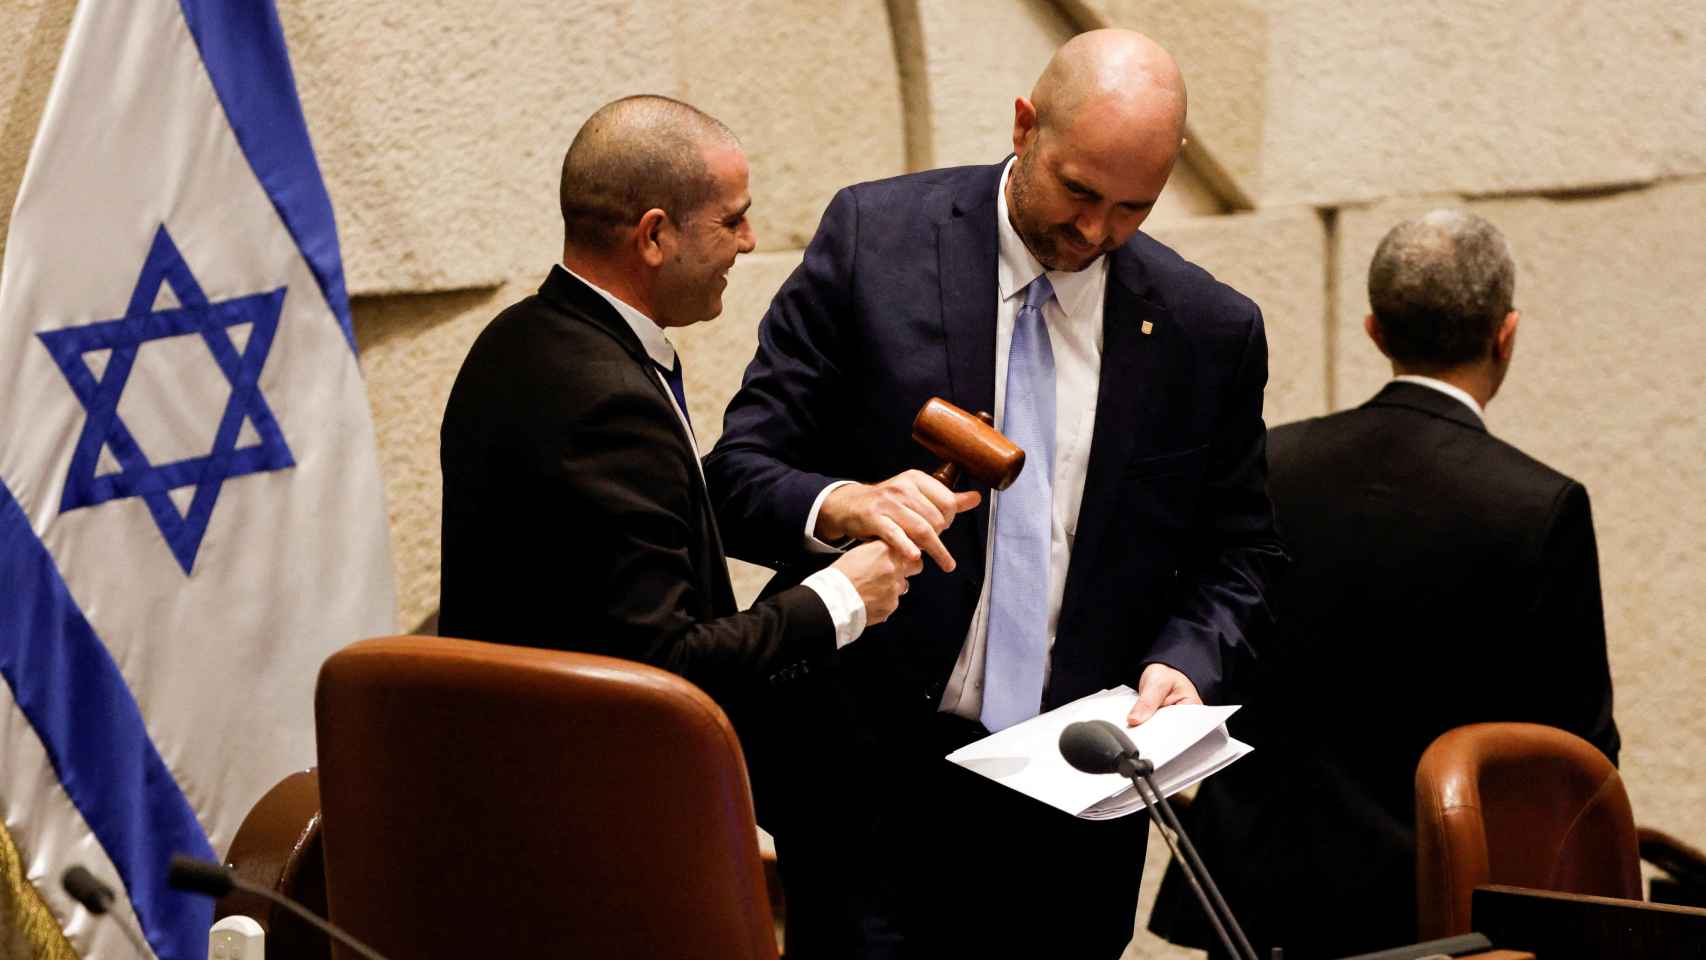 Amir Ohana, recibe el mazo cuando el nuevo gobierno de Israel presta juramento en la Knesset